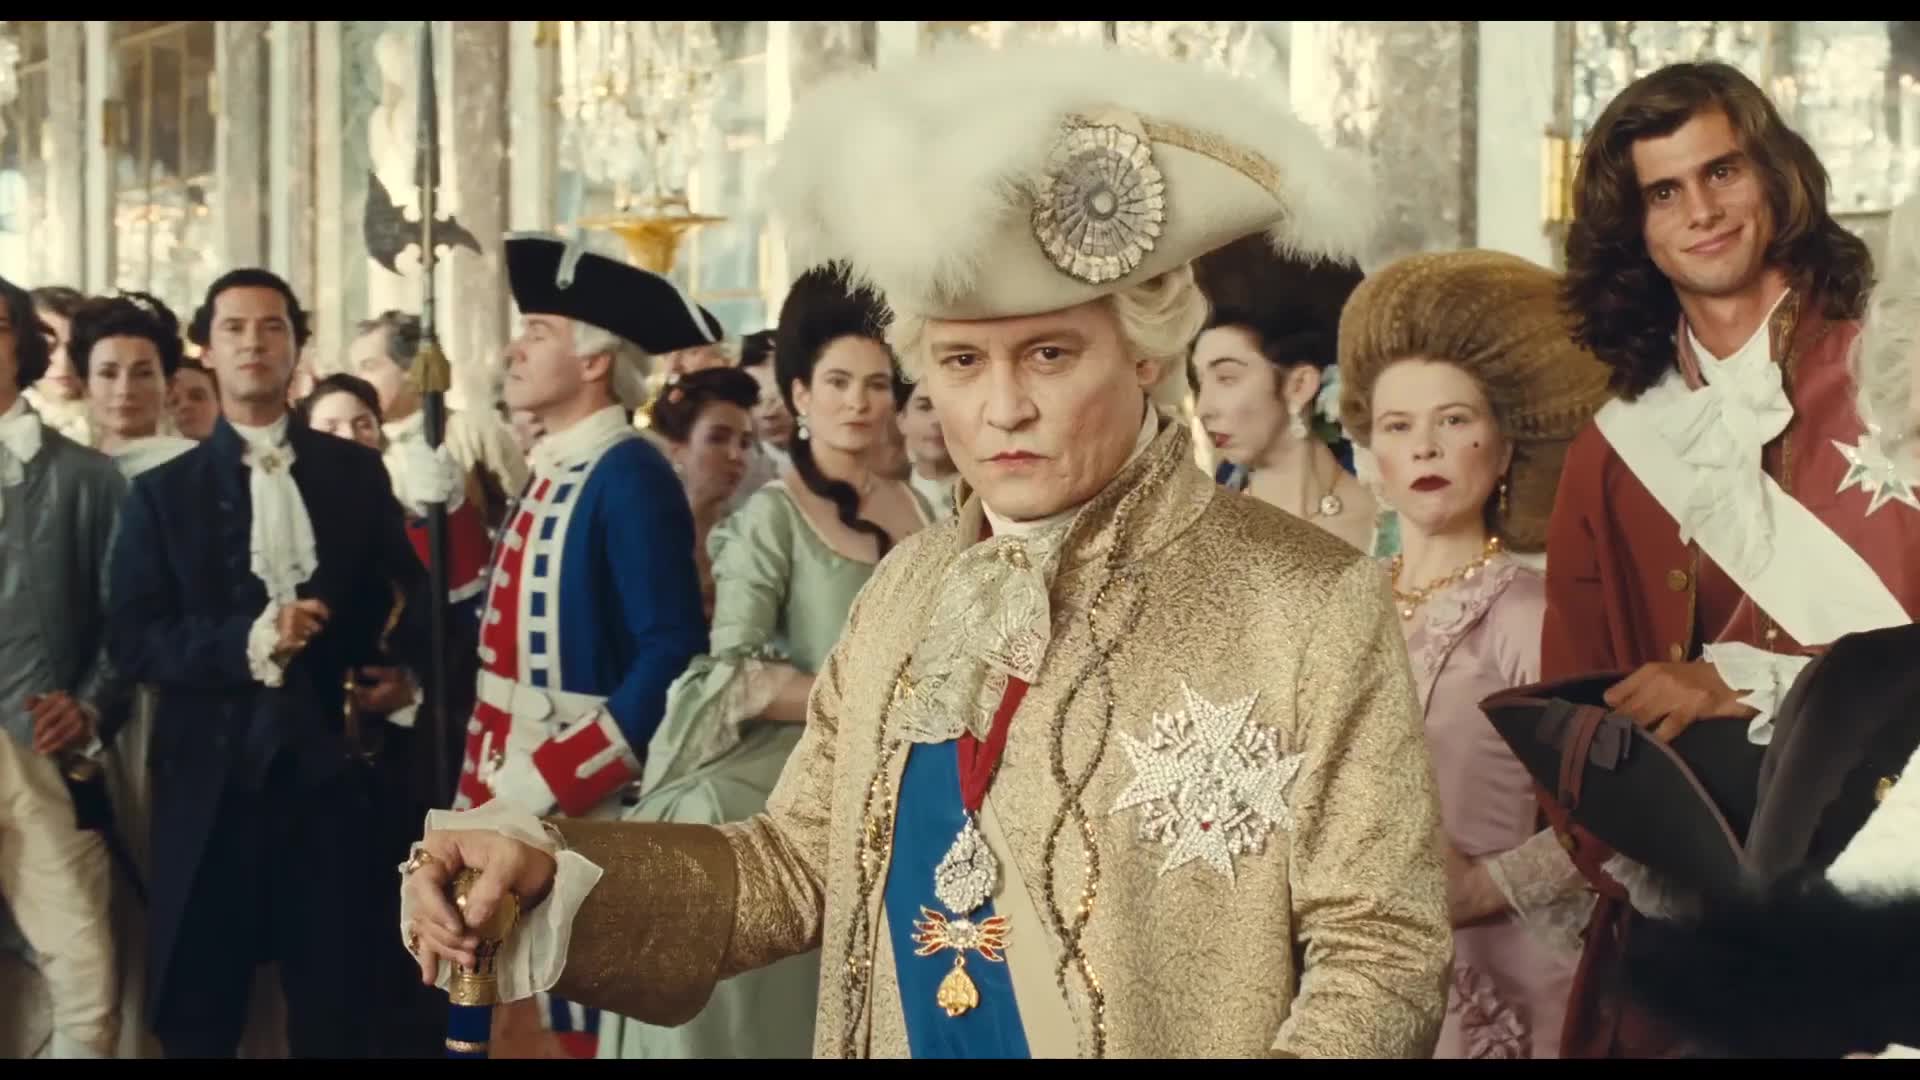 Johnny Depp as King Louis XV: "Jeanne du Barry"